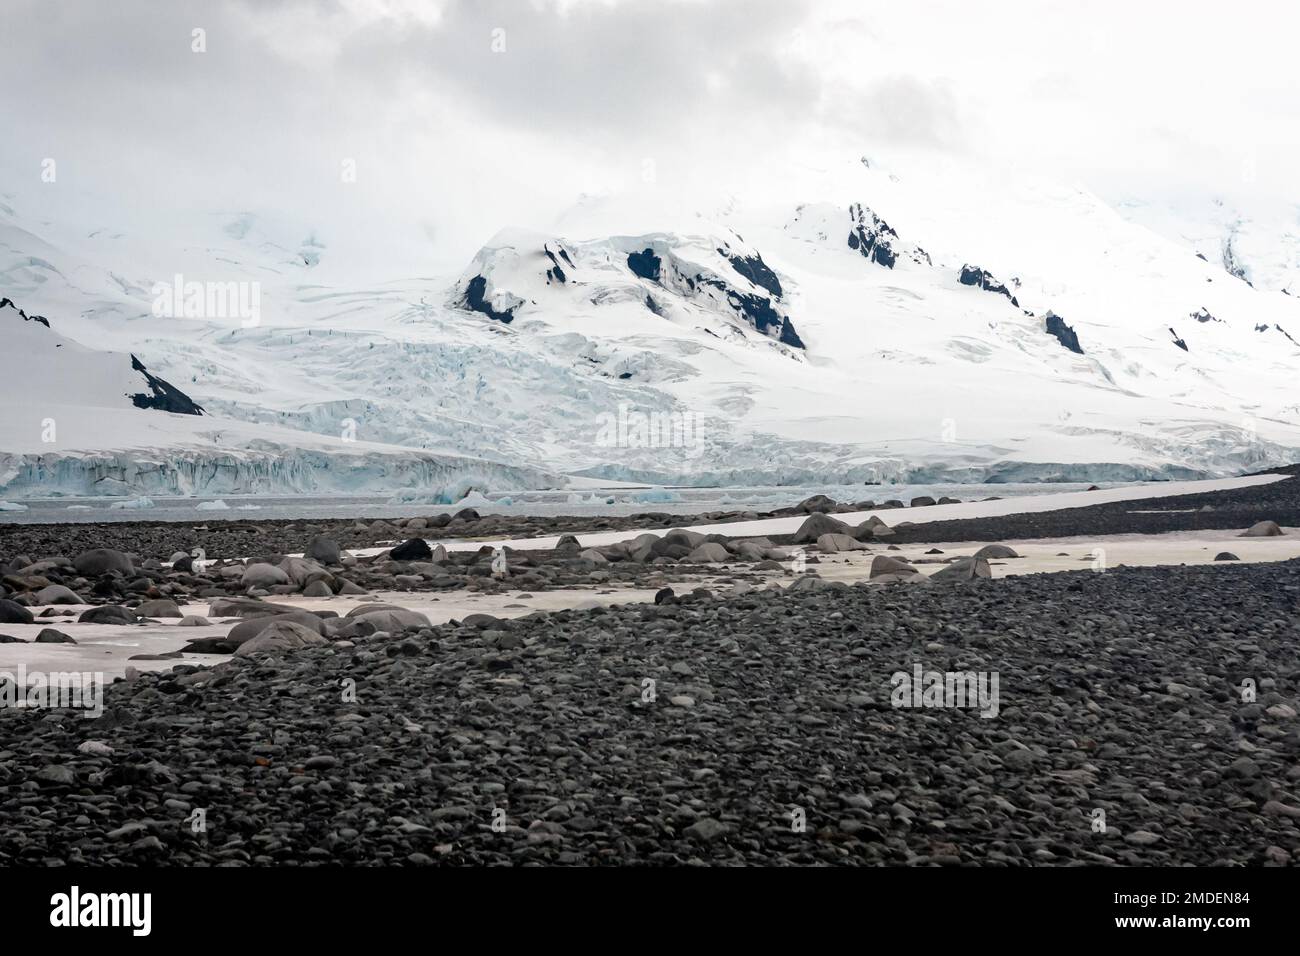 Die sich ändernden Wetterbedingungen in der Antarktis führen zu großen Schwankungen der etablierten saisonalen Rhythmen und Veränderungen der physischen Umgebung Stockfoto